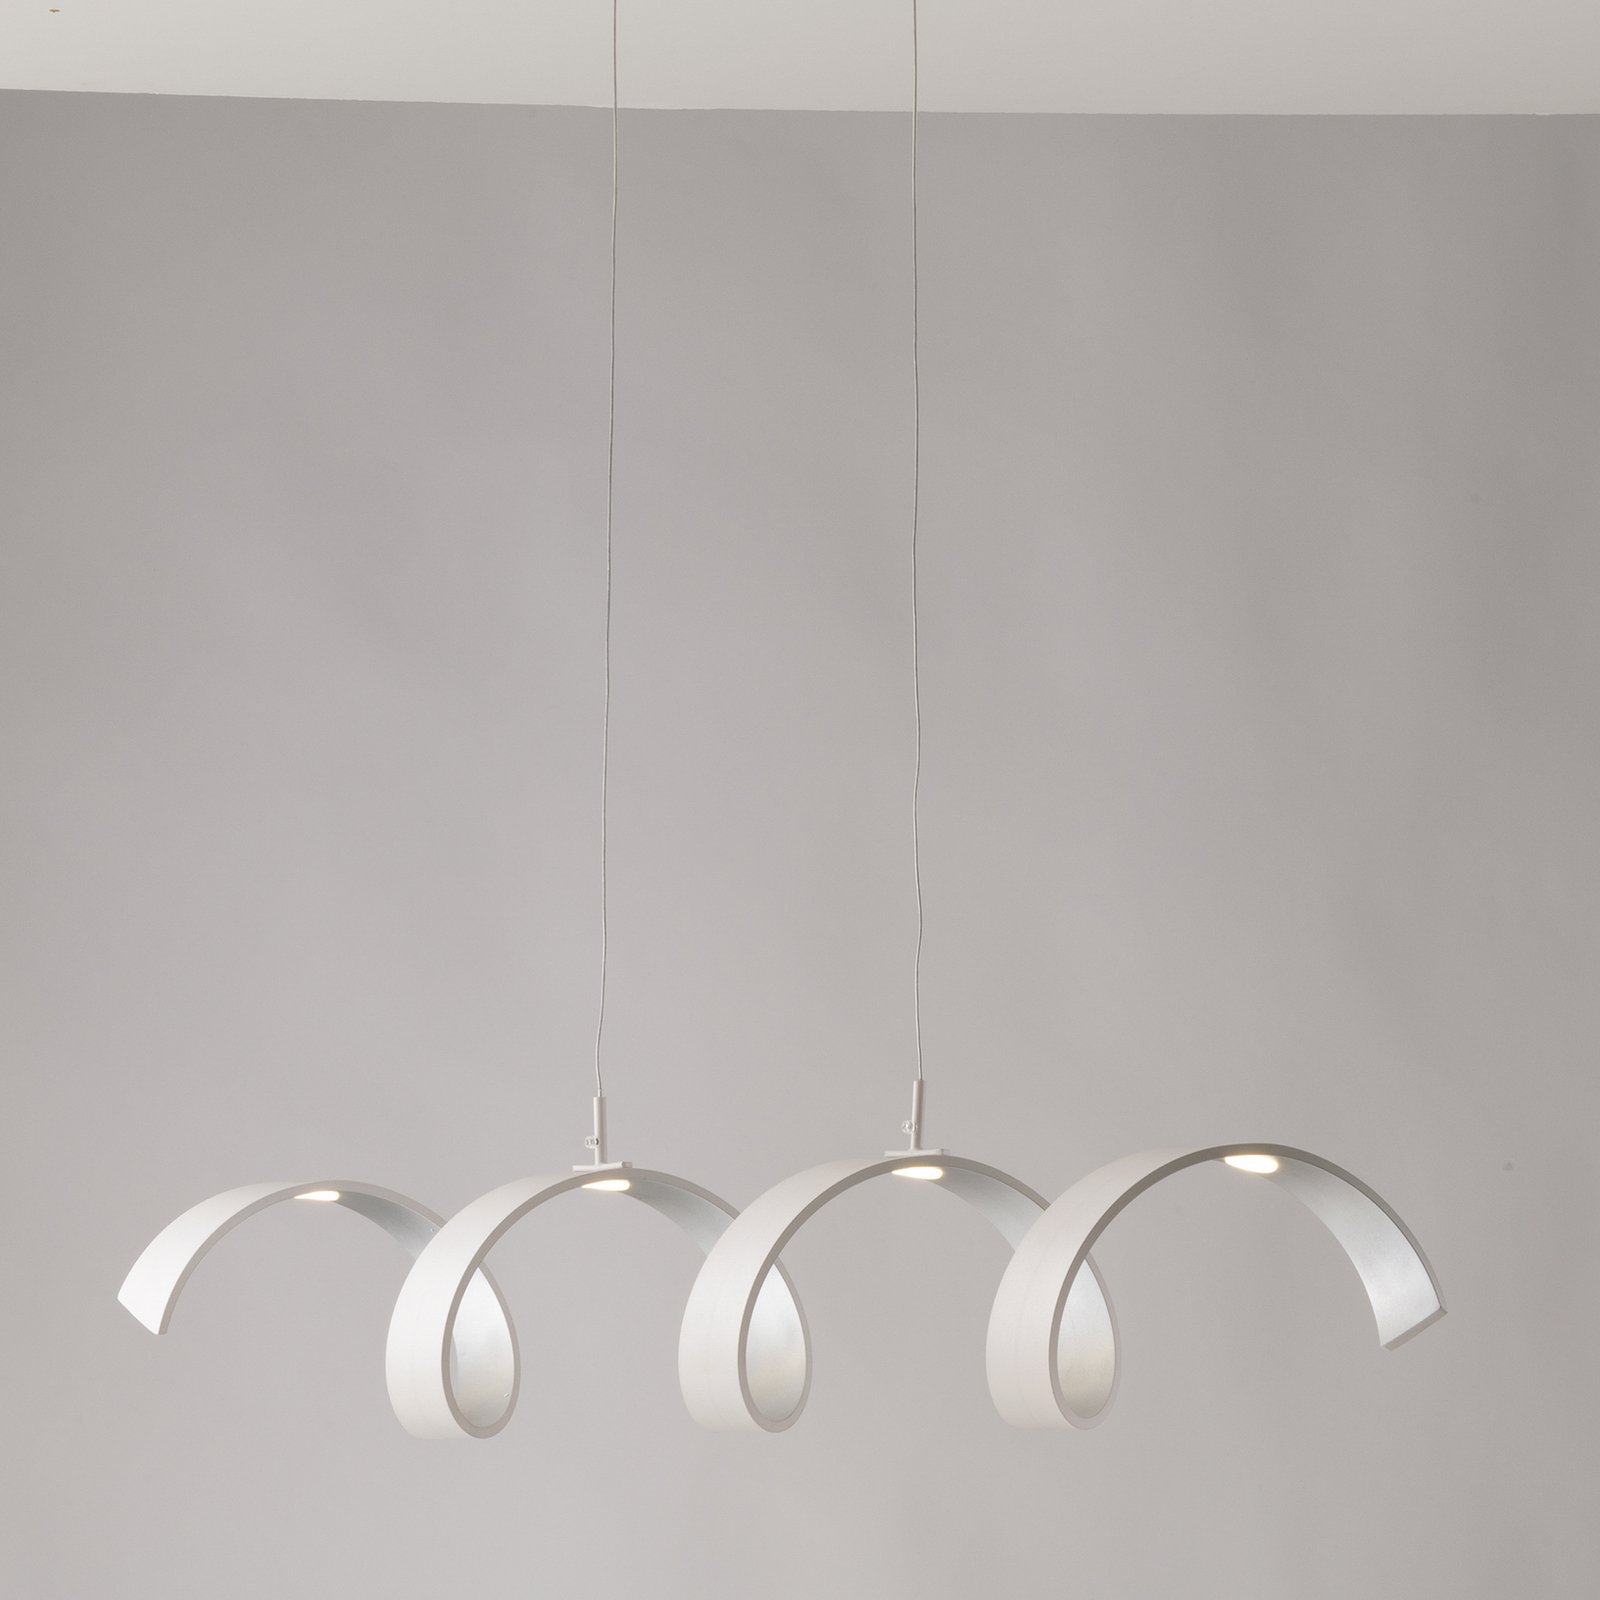 Sospensione LED Helix bianco-argento, lunga 80 cm